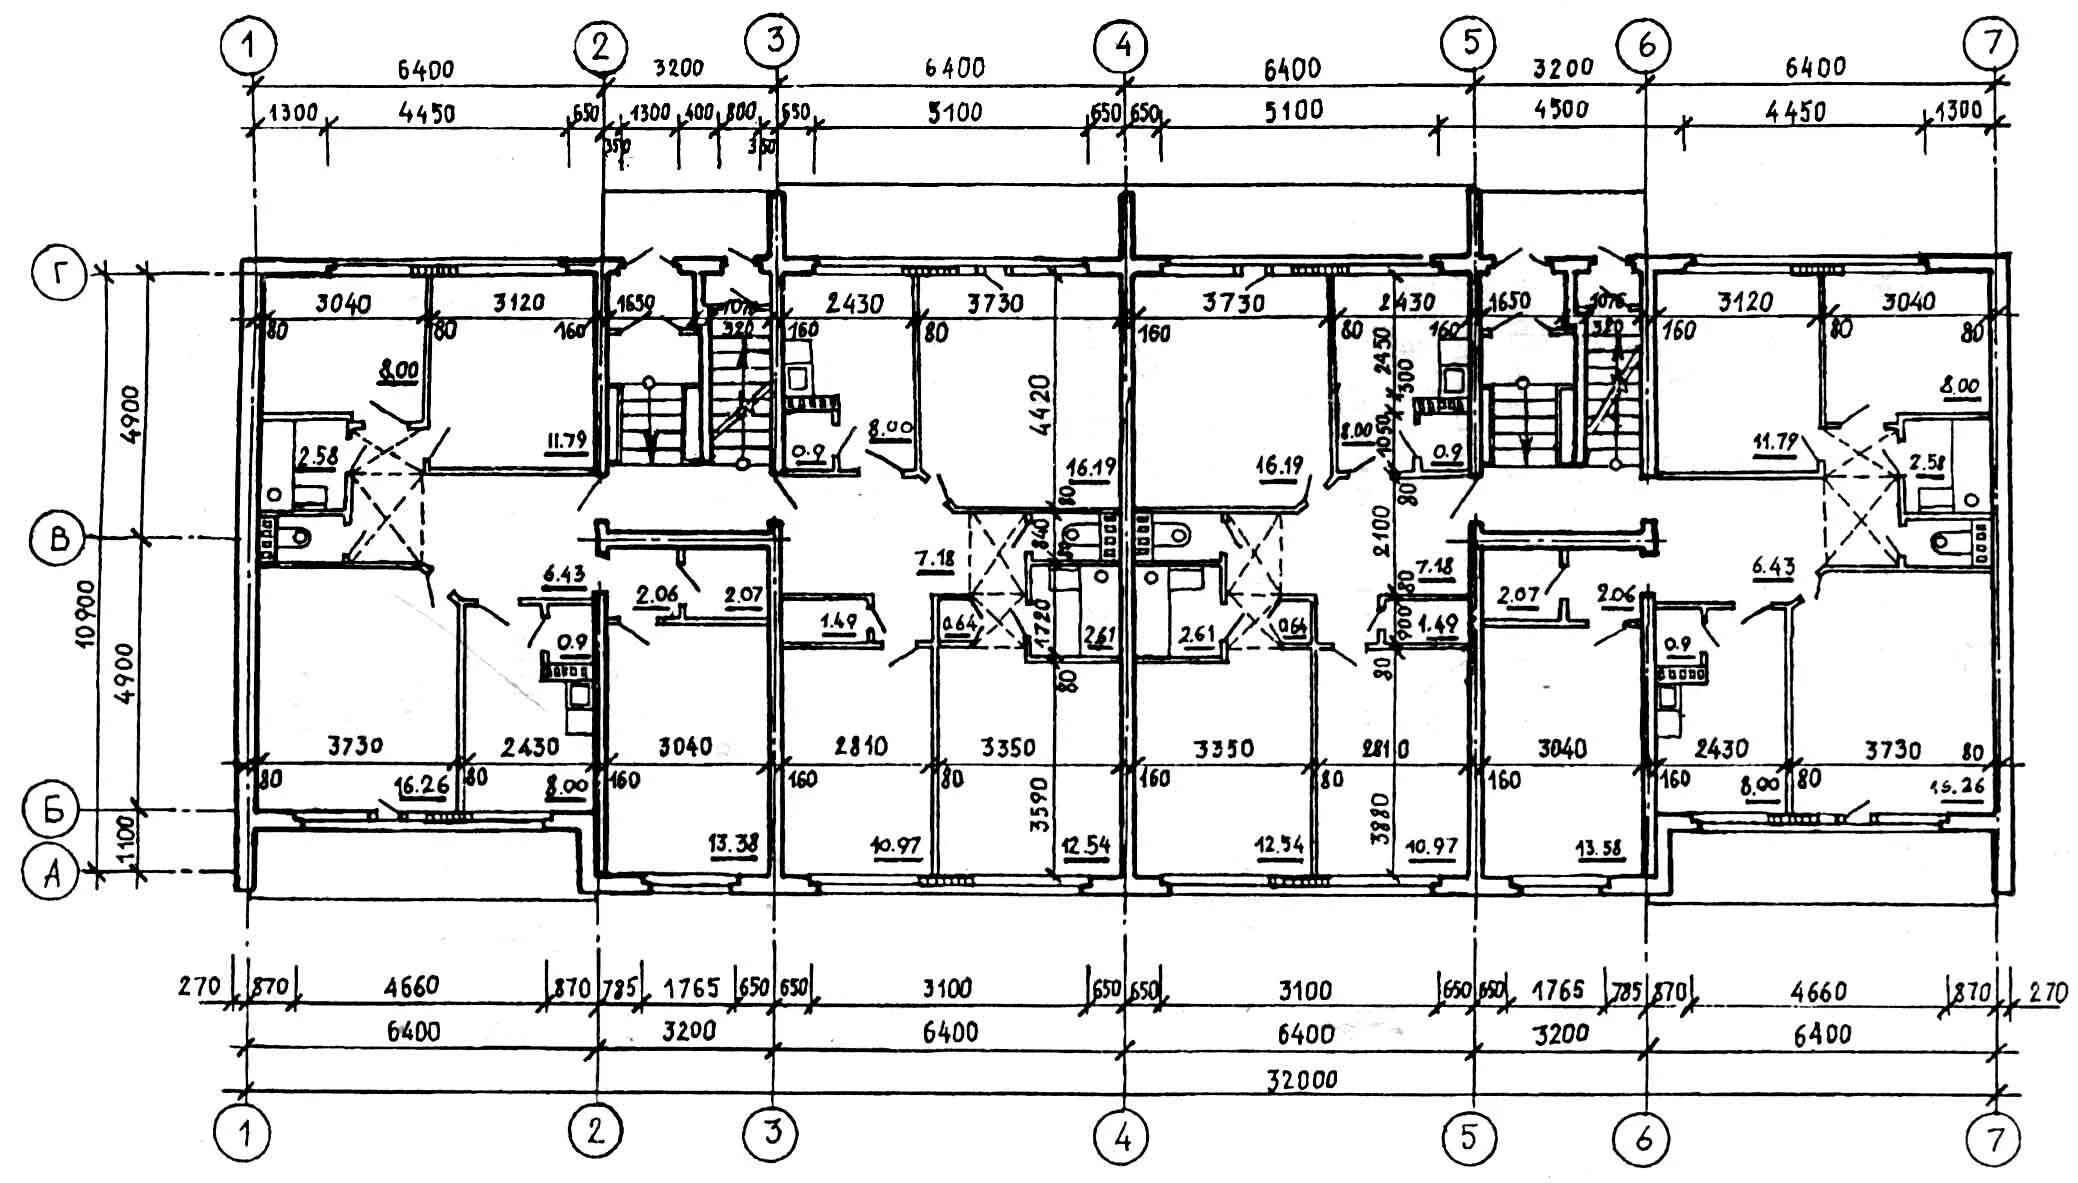 План панельного. Схема 9 этажного панельного дома. План первого этажа панельного дома. Типовой проект 9 этажного панельного дома. Типовые планировки панельных домов 10 этажей.